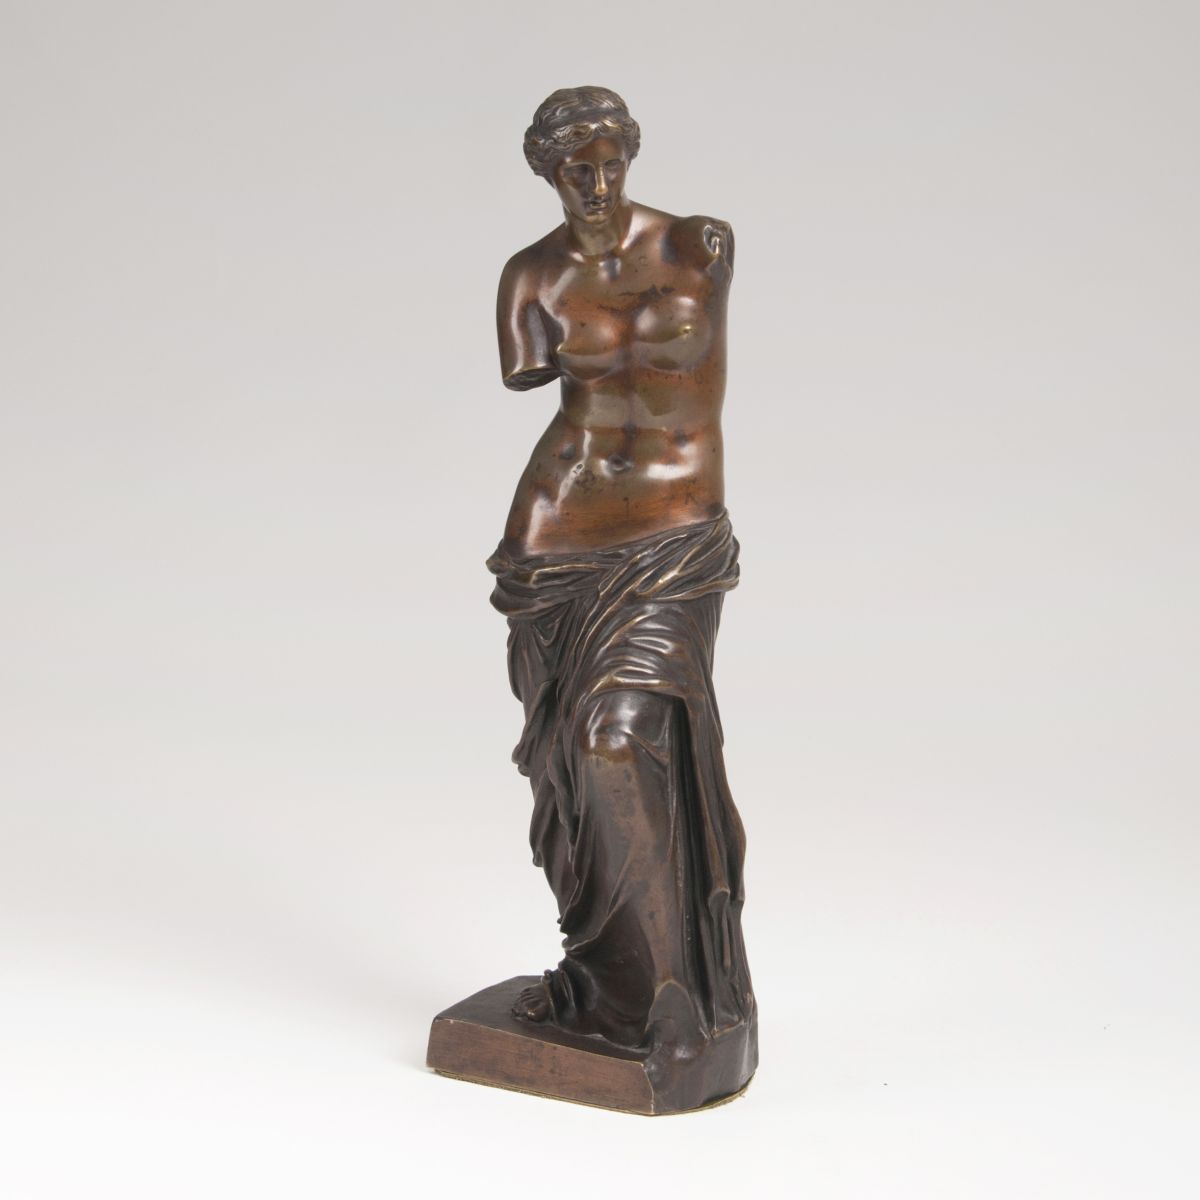 A bronze sculpture 'Venus of Milo' after the antique model